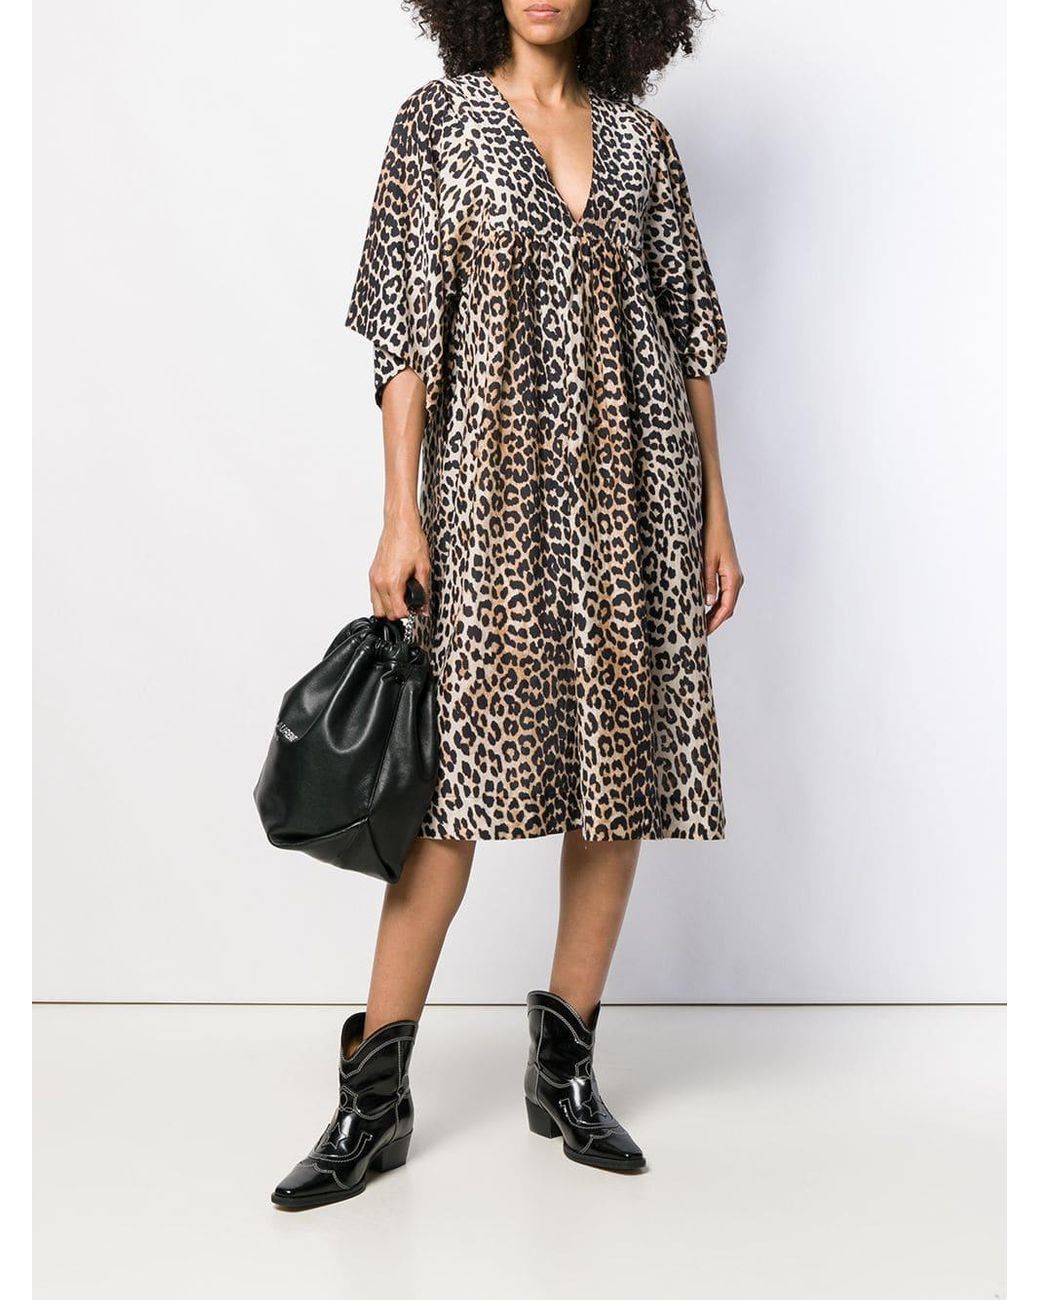 Ganni Silk Leopard Print Loose Fit Dress in Black | Lyst